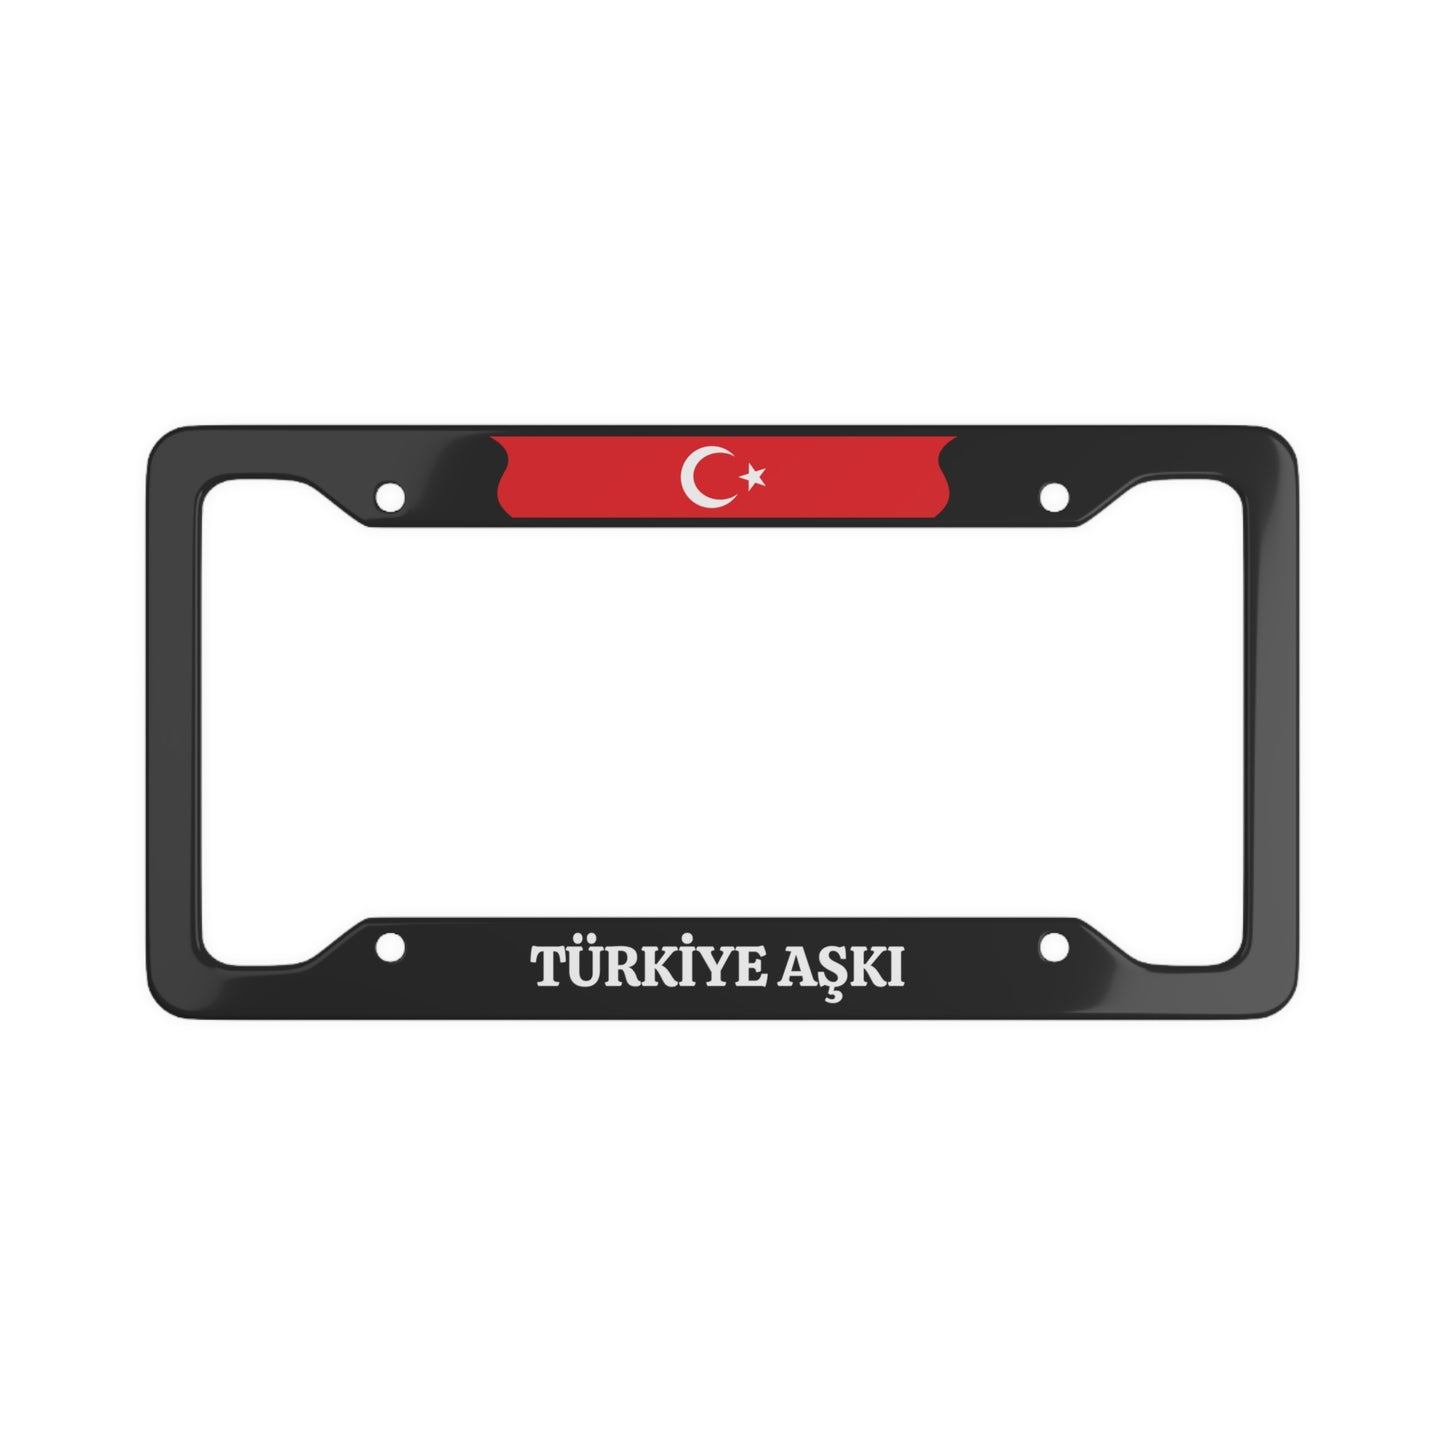 TÜRKİYE AŞKI License Plate Frame